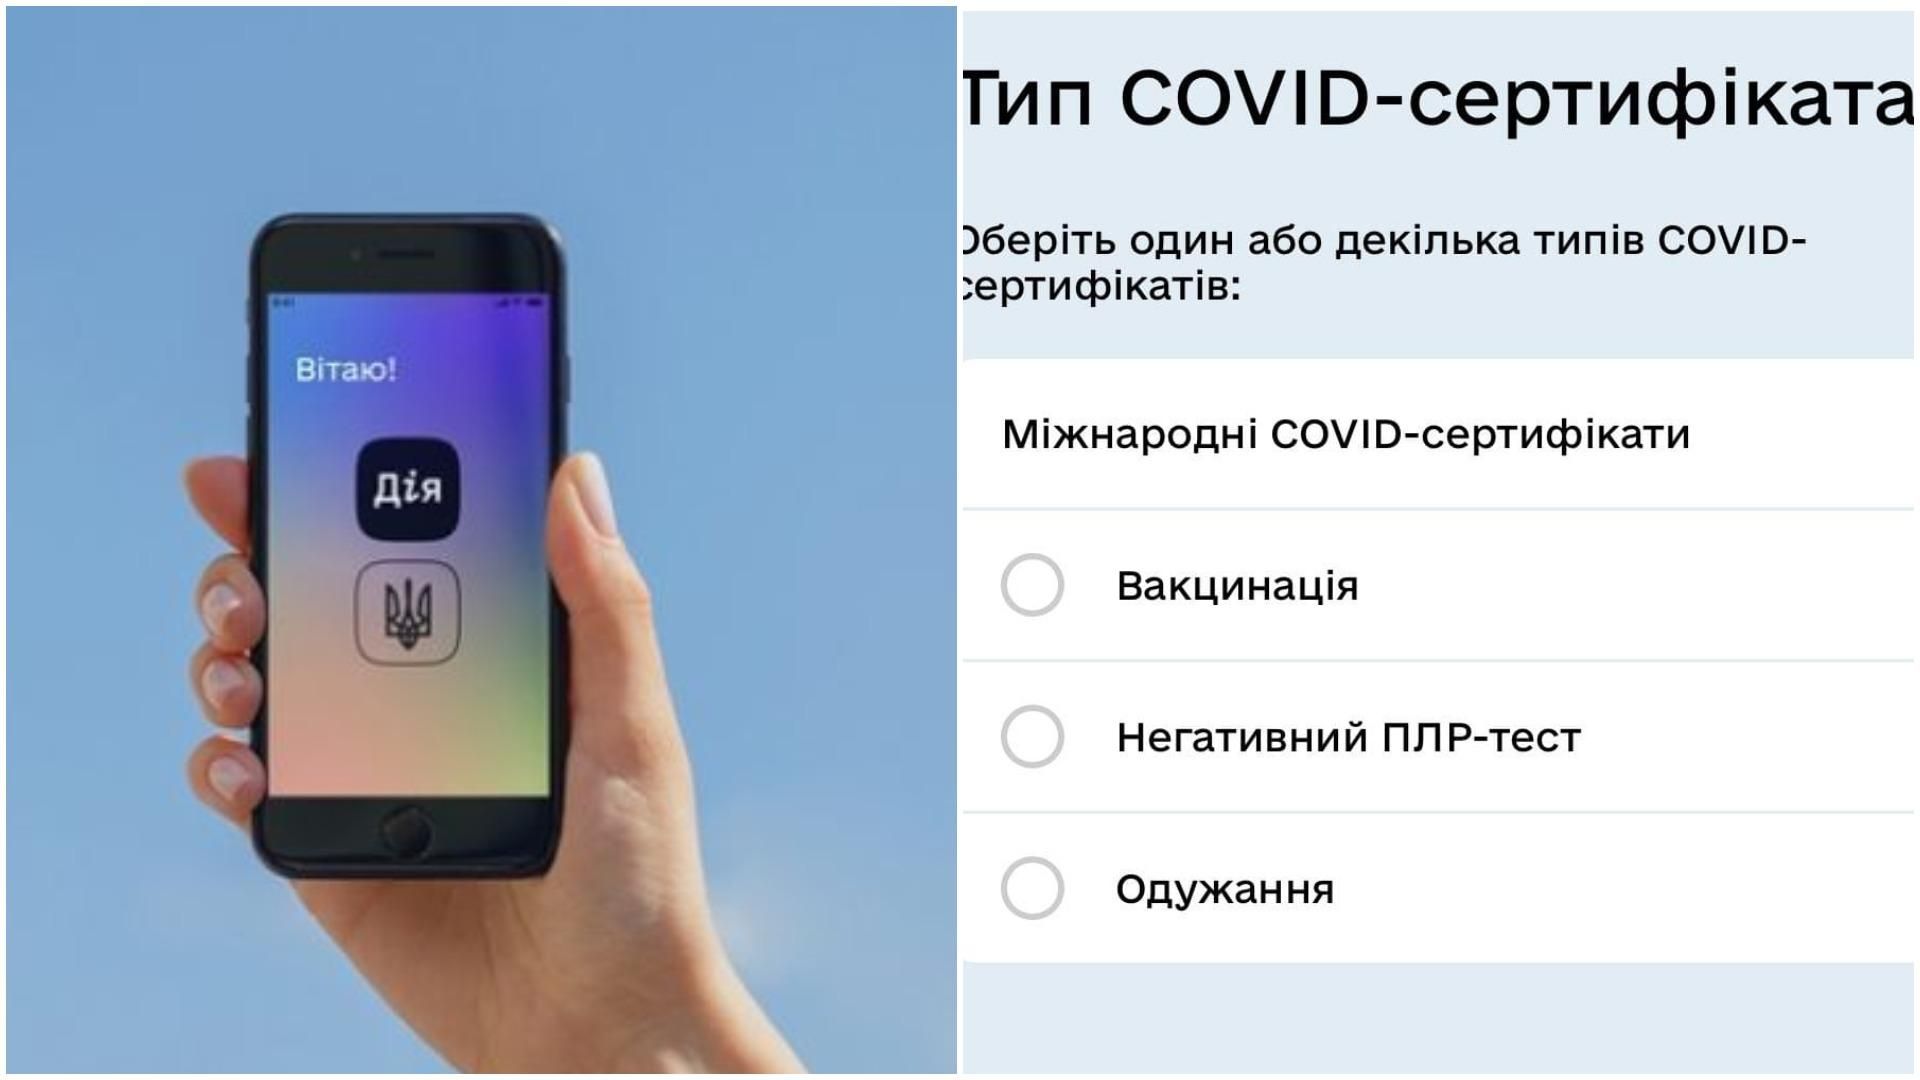 У Дії вже можна згенерувати COVID-сертифікат про негативний ПЛР-тест - Україна новини - 24 Канал